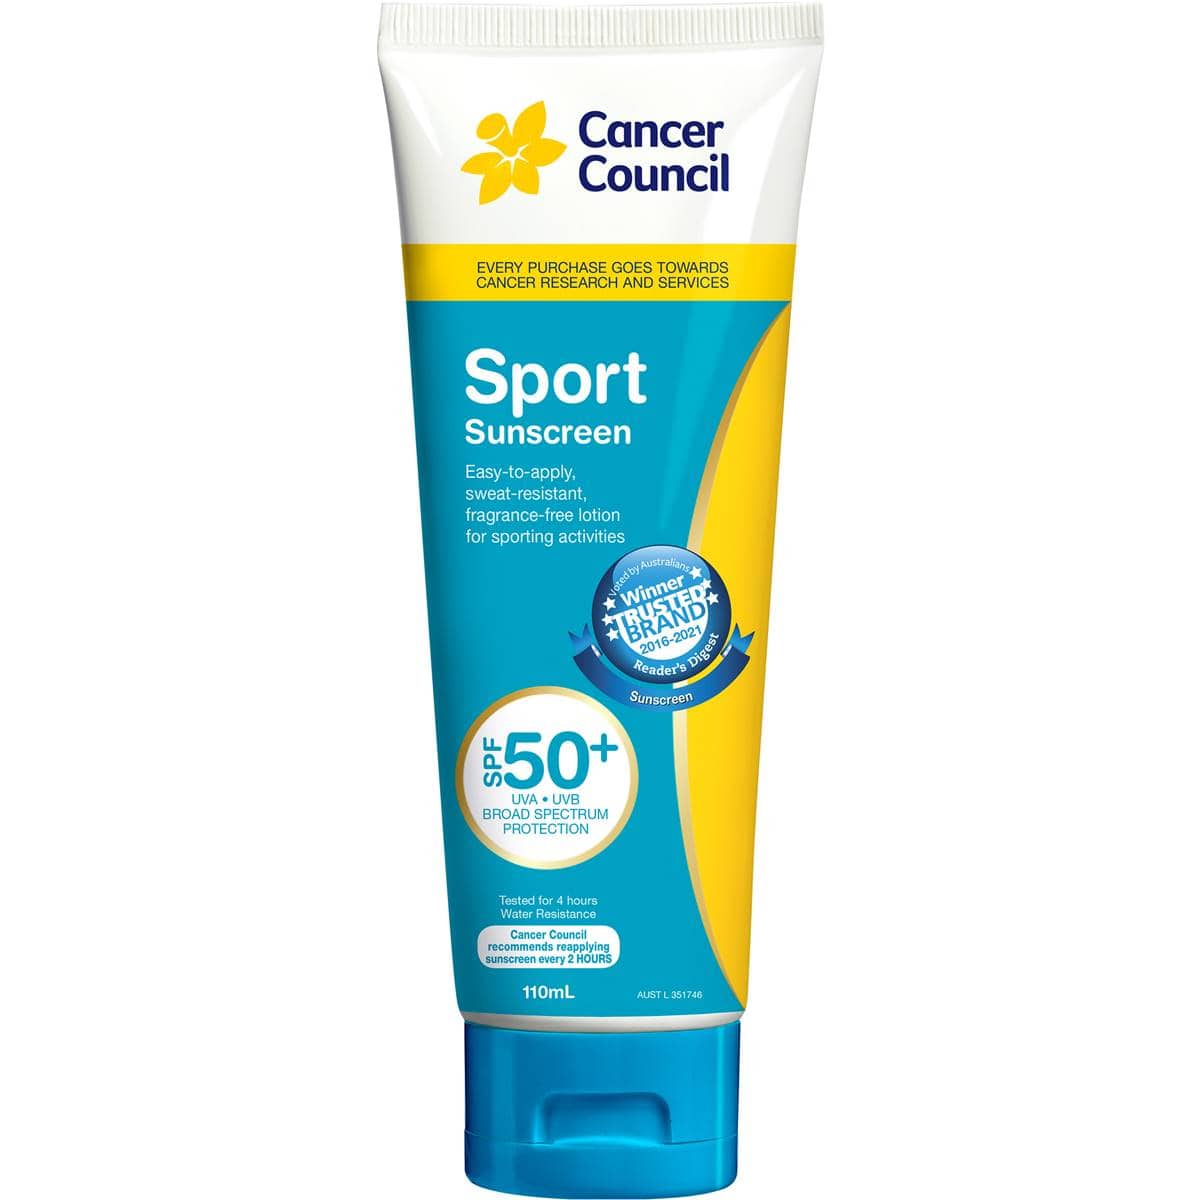 Cancer Council Sport SPF50+ Sunscreen 110ml